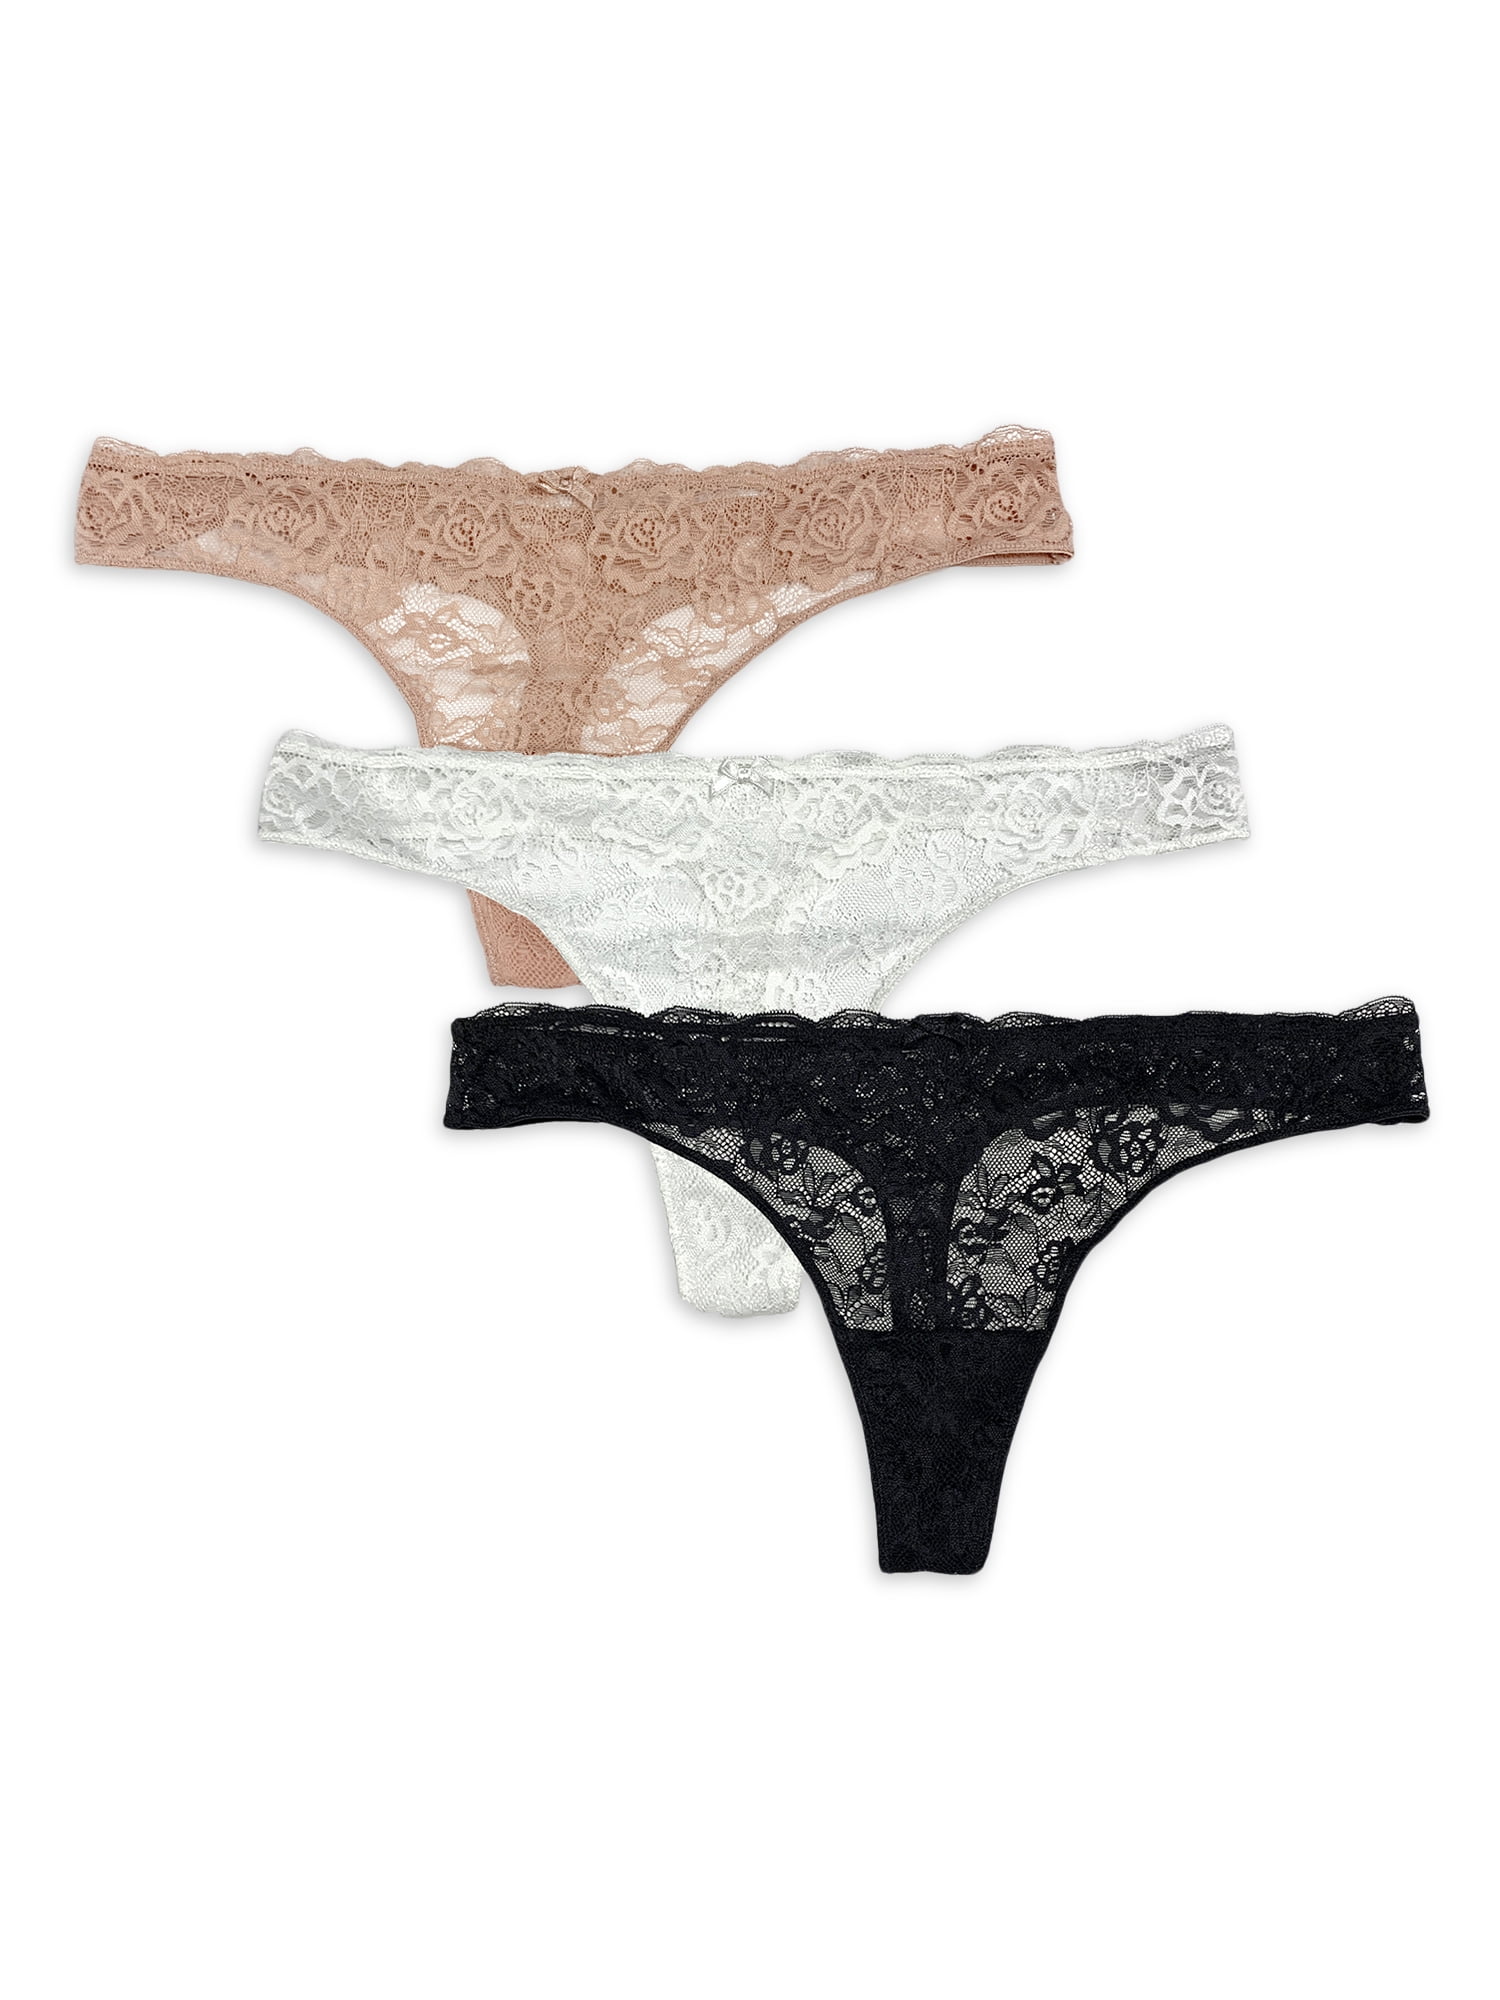 Secret Treasures Women's Lace Thong Panties, 3-Pack 